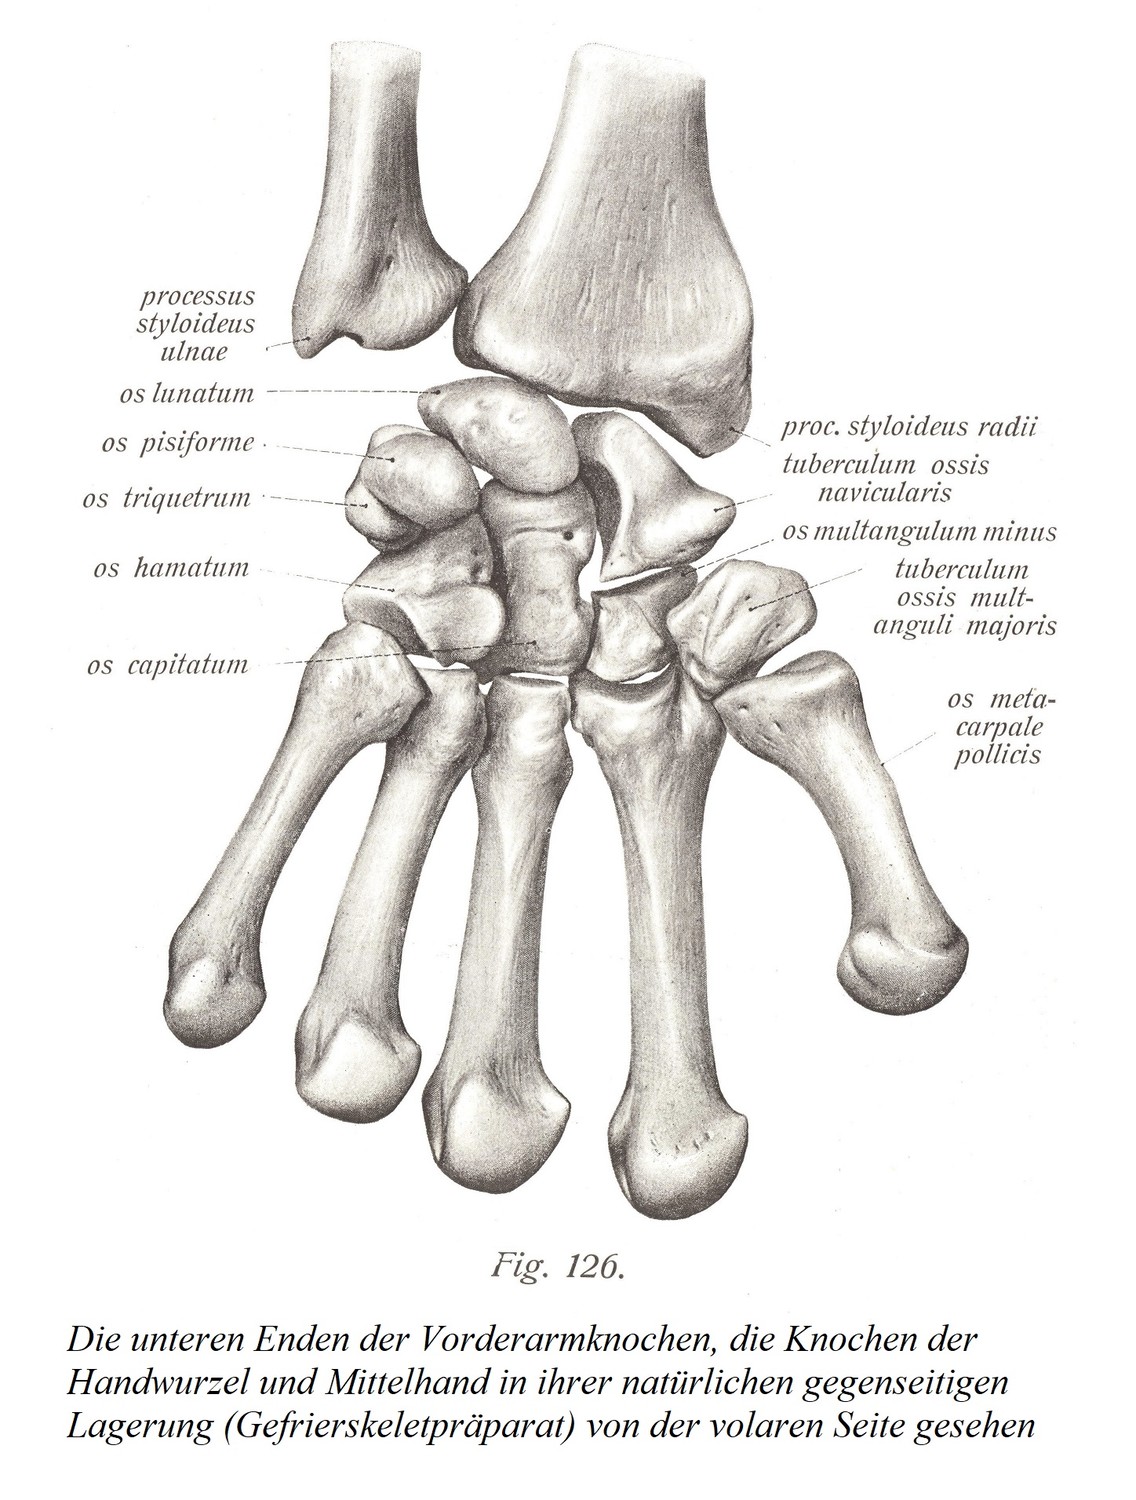 Нижние концы костей предплечья, кости запястья и пястные кости в их естественном взаимном положении (препарат замороженного скелета) при осмотре с ладонной стороны